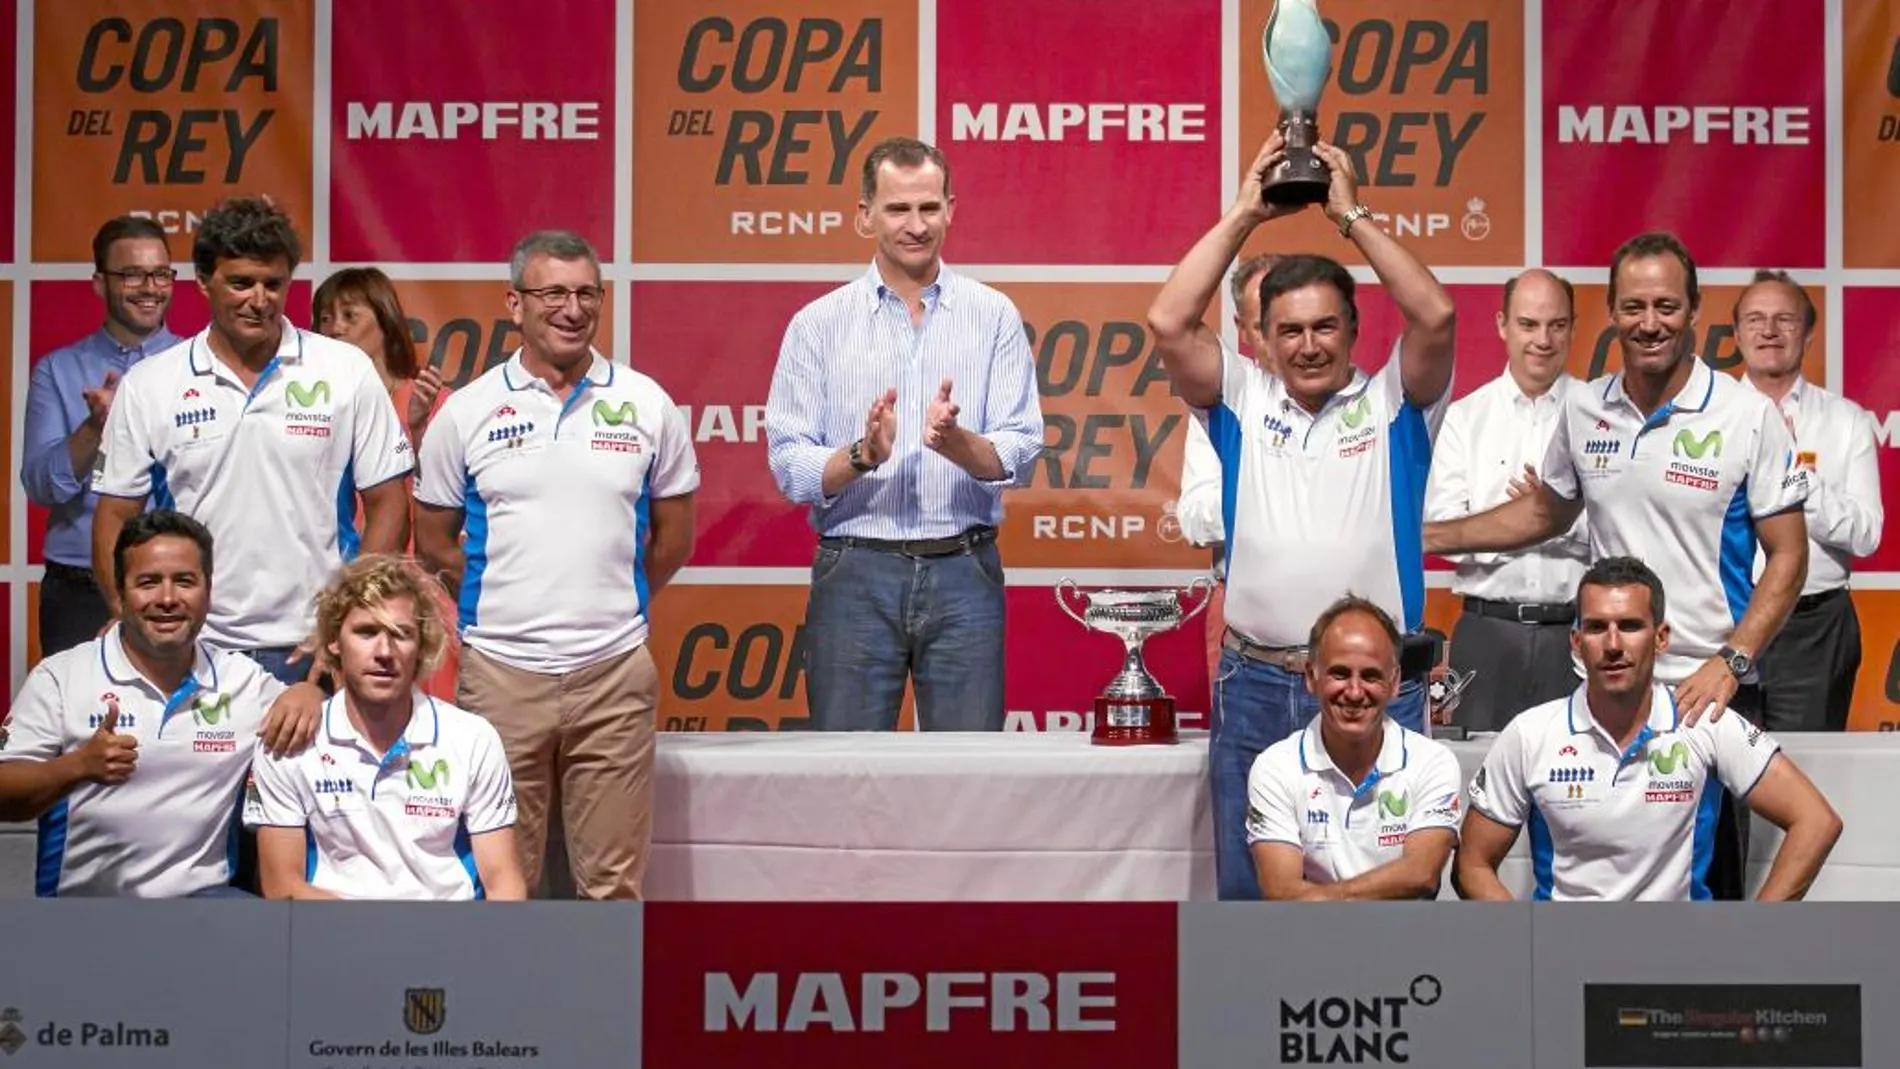 Felipe VI entregó a Pedro Campos el trofeo de ganador de la 35ª edición de la Copa del Rey Mapfre